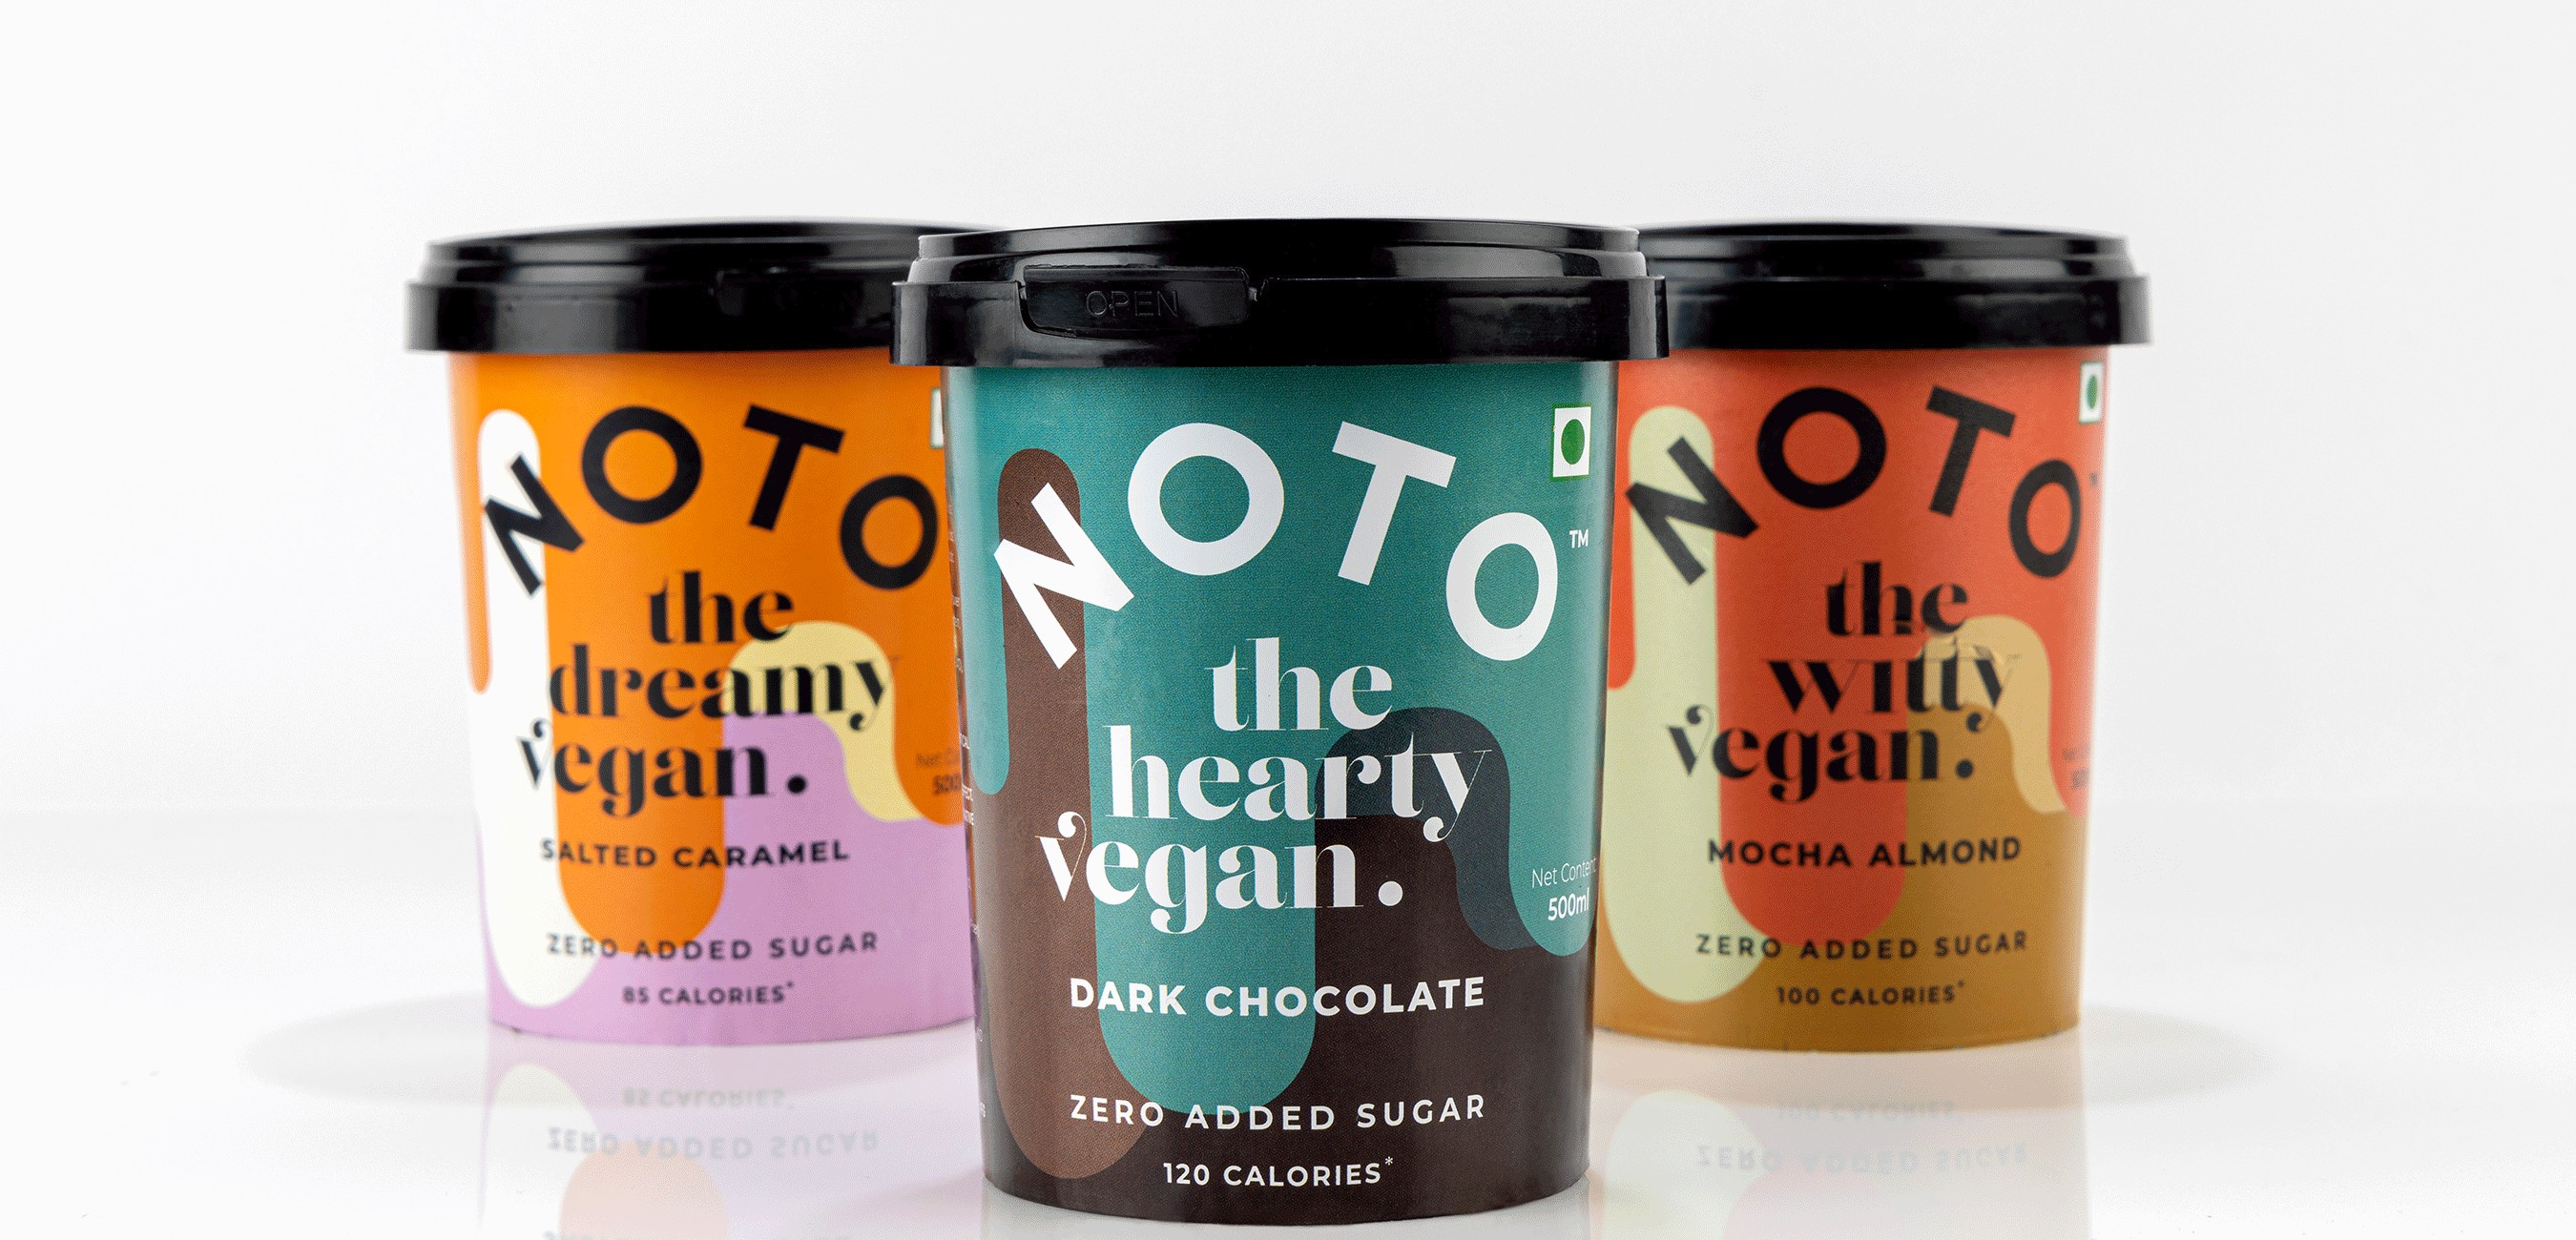 Noto Vegan ice Cream Packaging Design